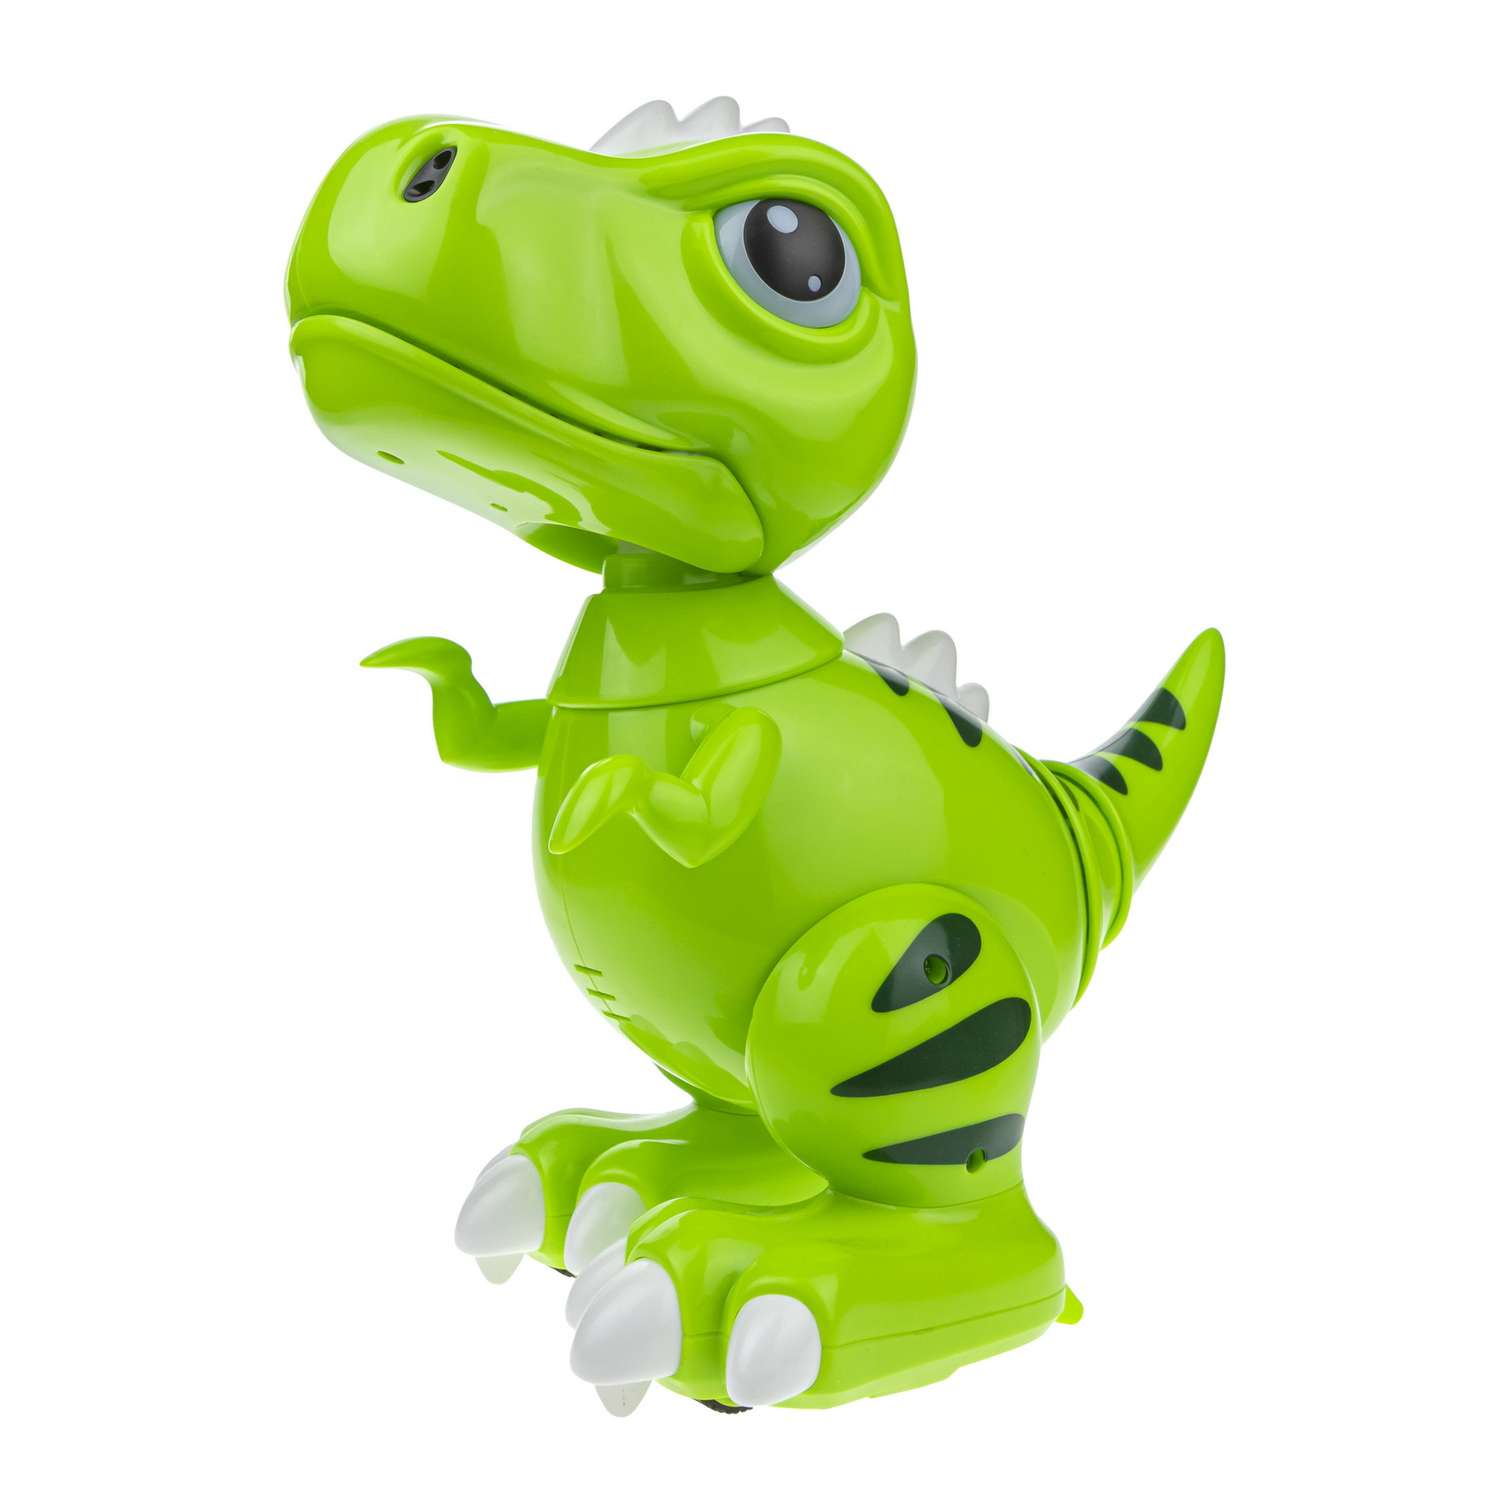 Интерактивная игрушка Robo Pets Динозавр Т-РЕКС зеленый на РУ со световыми звуковыми и эффектами движения - фото 6